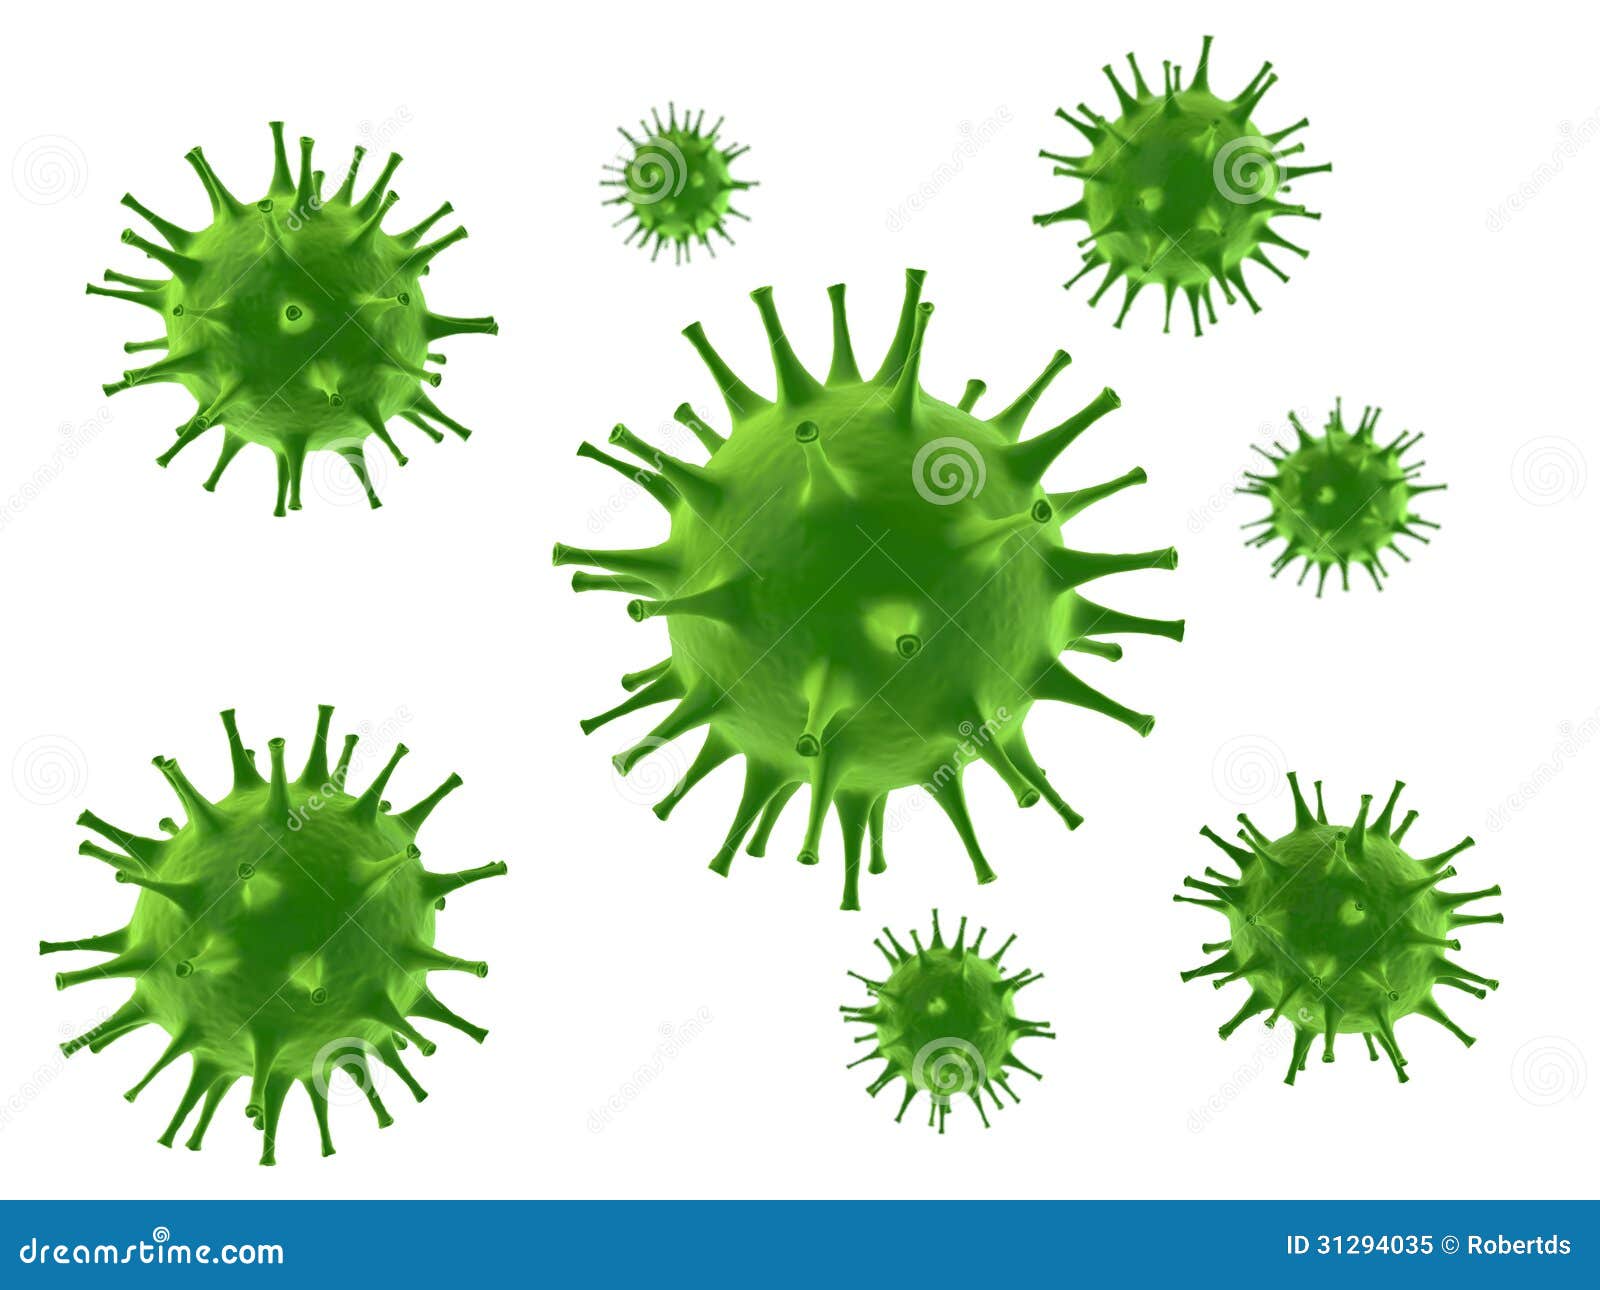 Зеленая слизь вирус. Зеленые сопли это вирус или бактерии. Зеленые сопли бактерии. Анимация микробиология на белом фоне. Вирус слизь